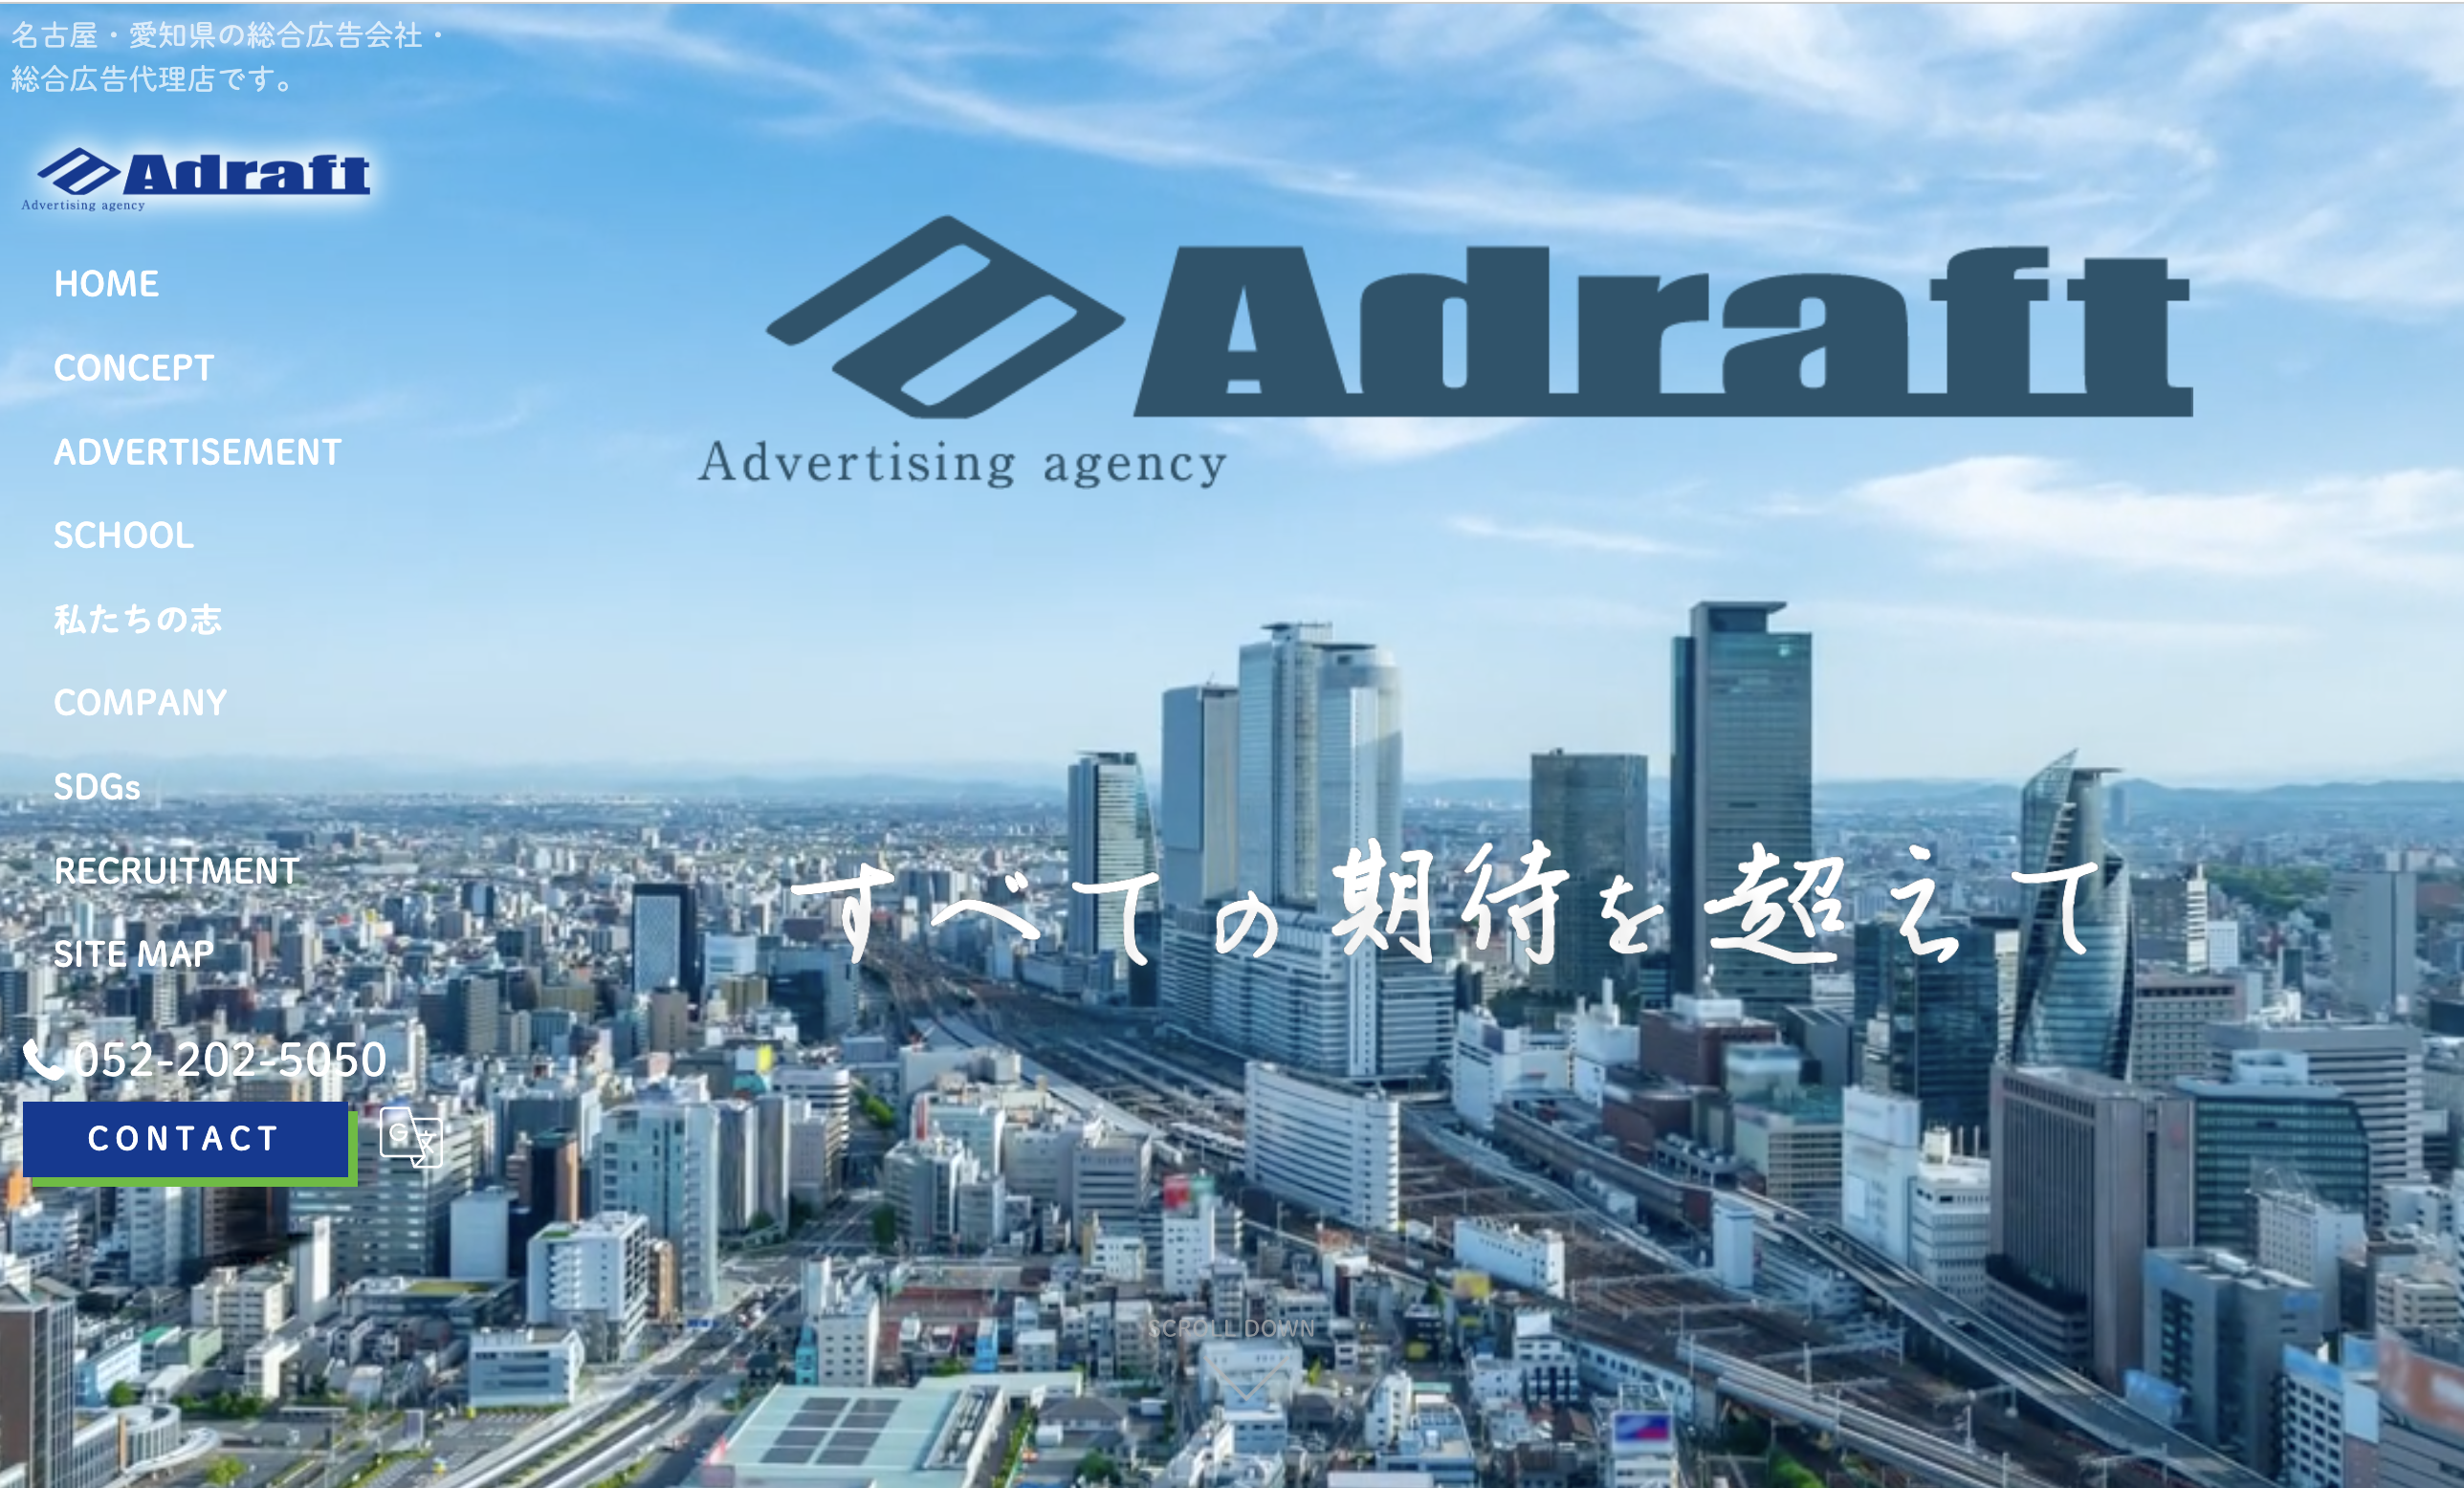 アドラフト株式会社のアドラフト株式会社:求人広告サービス